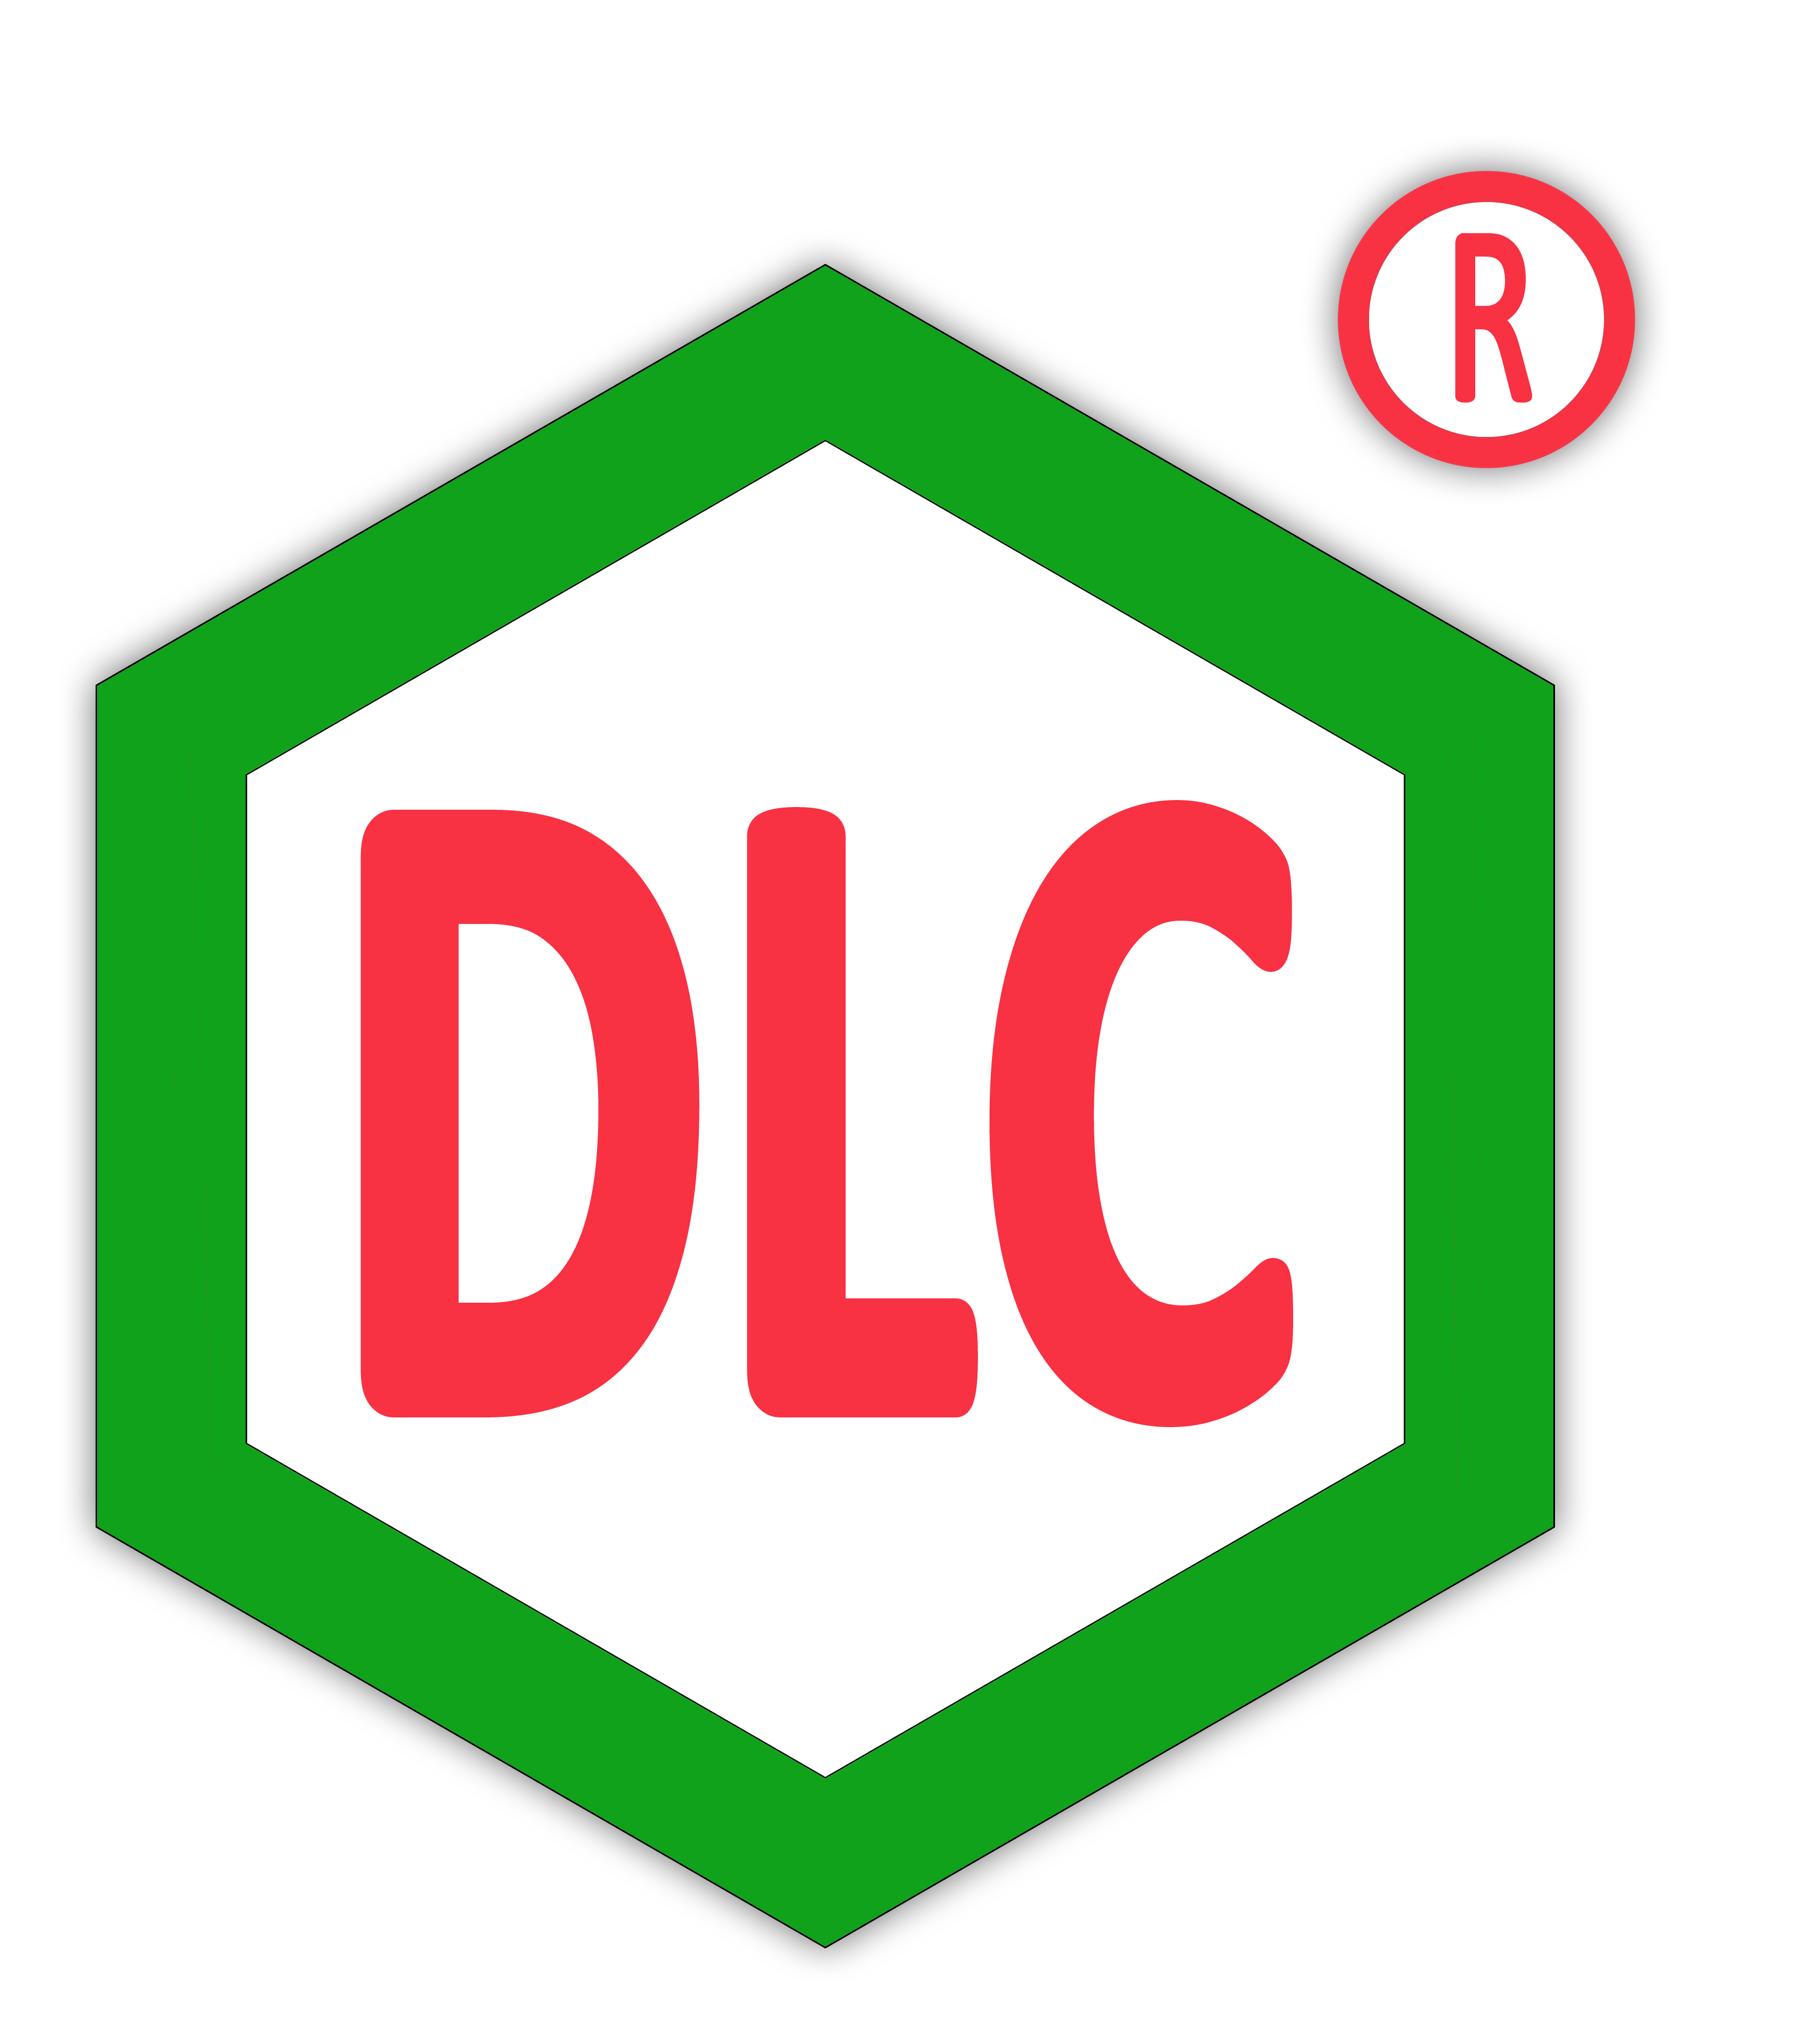 logo duc giang.png